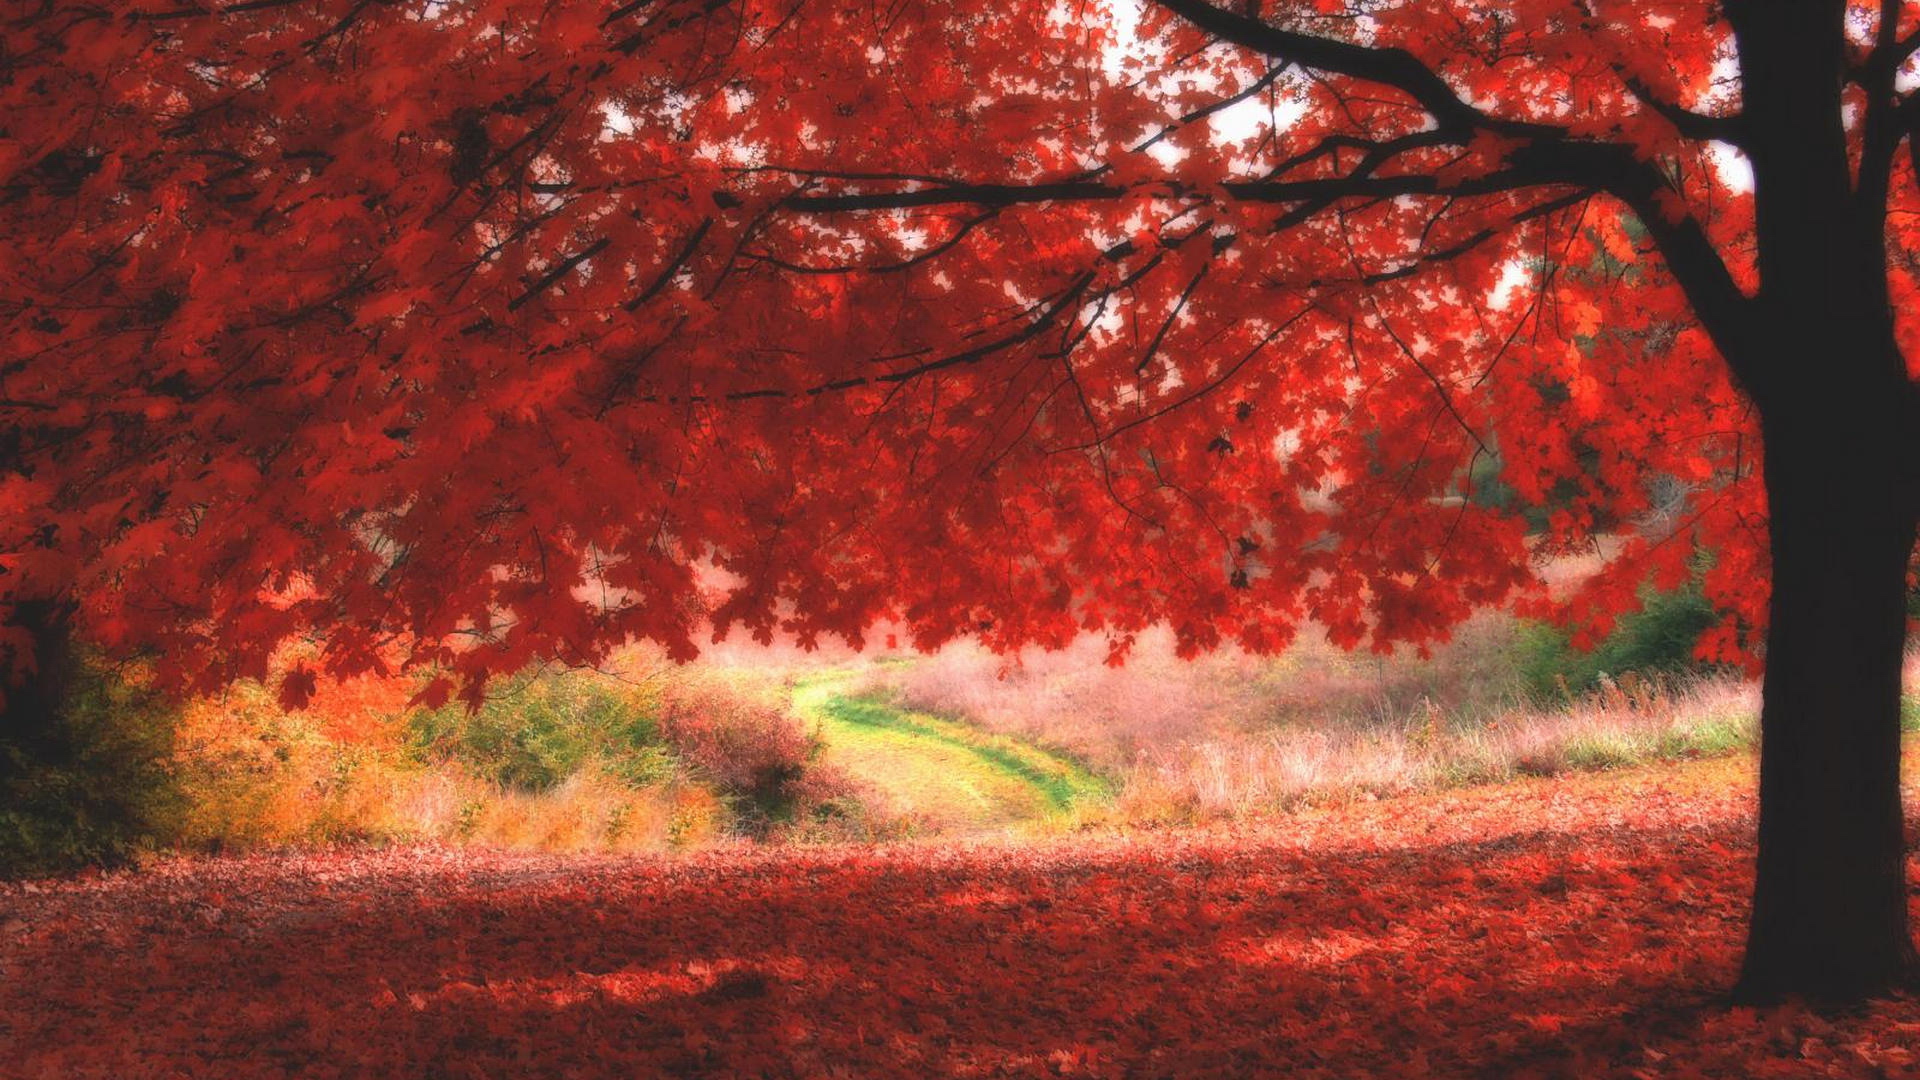 Red autumn